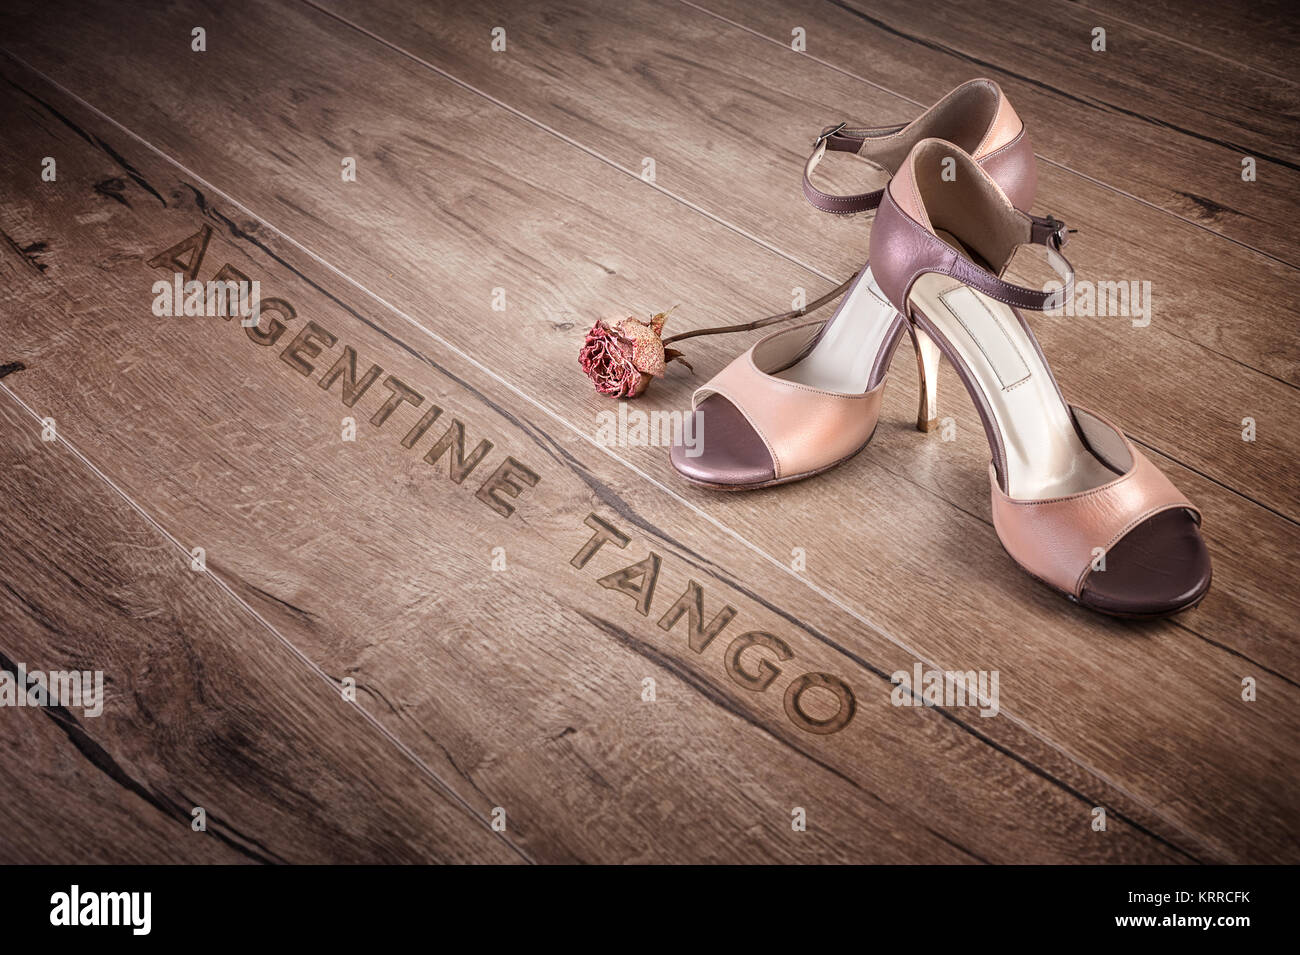 Argentinischer Tango Schuhe und ein trockener Rose auf einen Holzboden, caption' Argentinischer Tango' Stockfoto